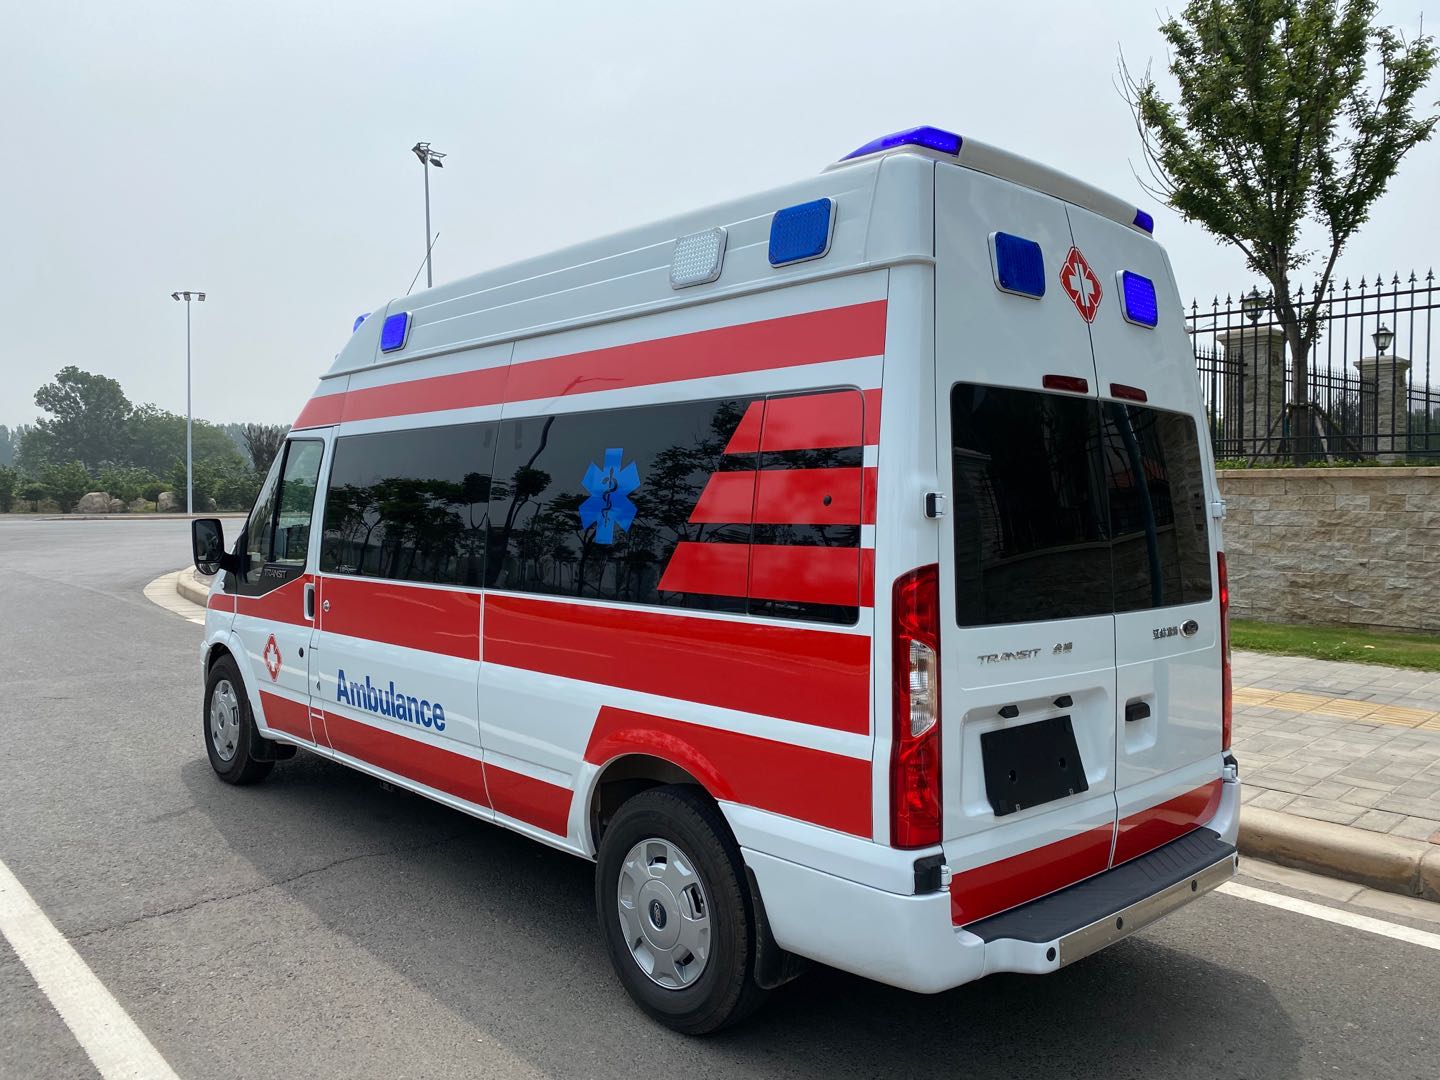 六盘水长途120救护车-运送病人转院出院-全国救护团队